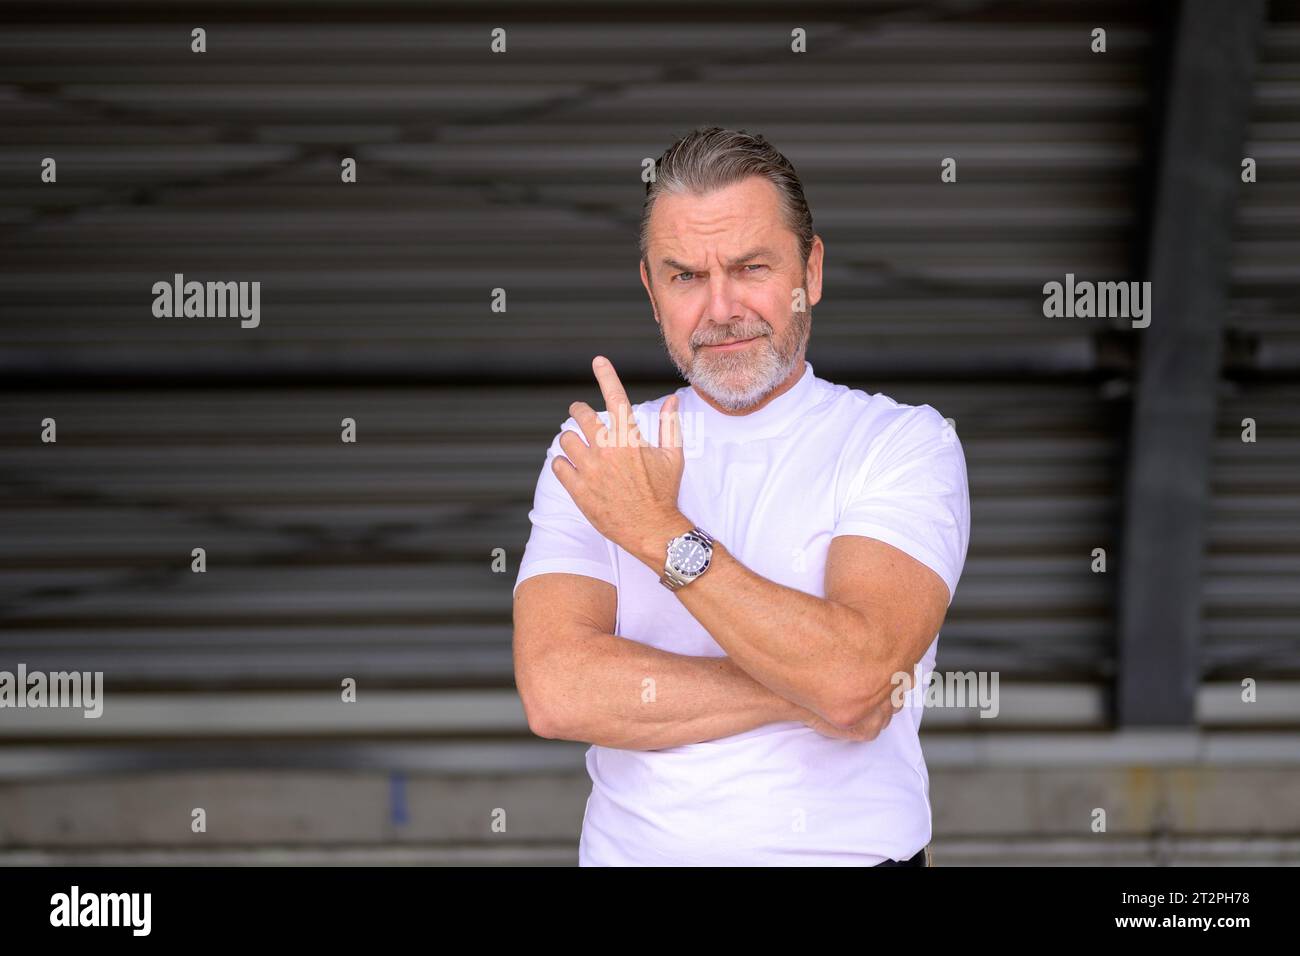 Attrayant homme aux cheveux gris avec un t-shirt blanc portant une montre de fantaisie et regardant de manière critique et demandant à la caméra, devant un fer ondulé W Banque D'Images